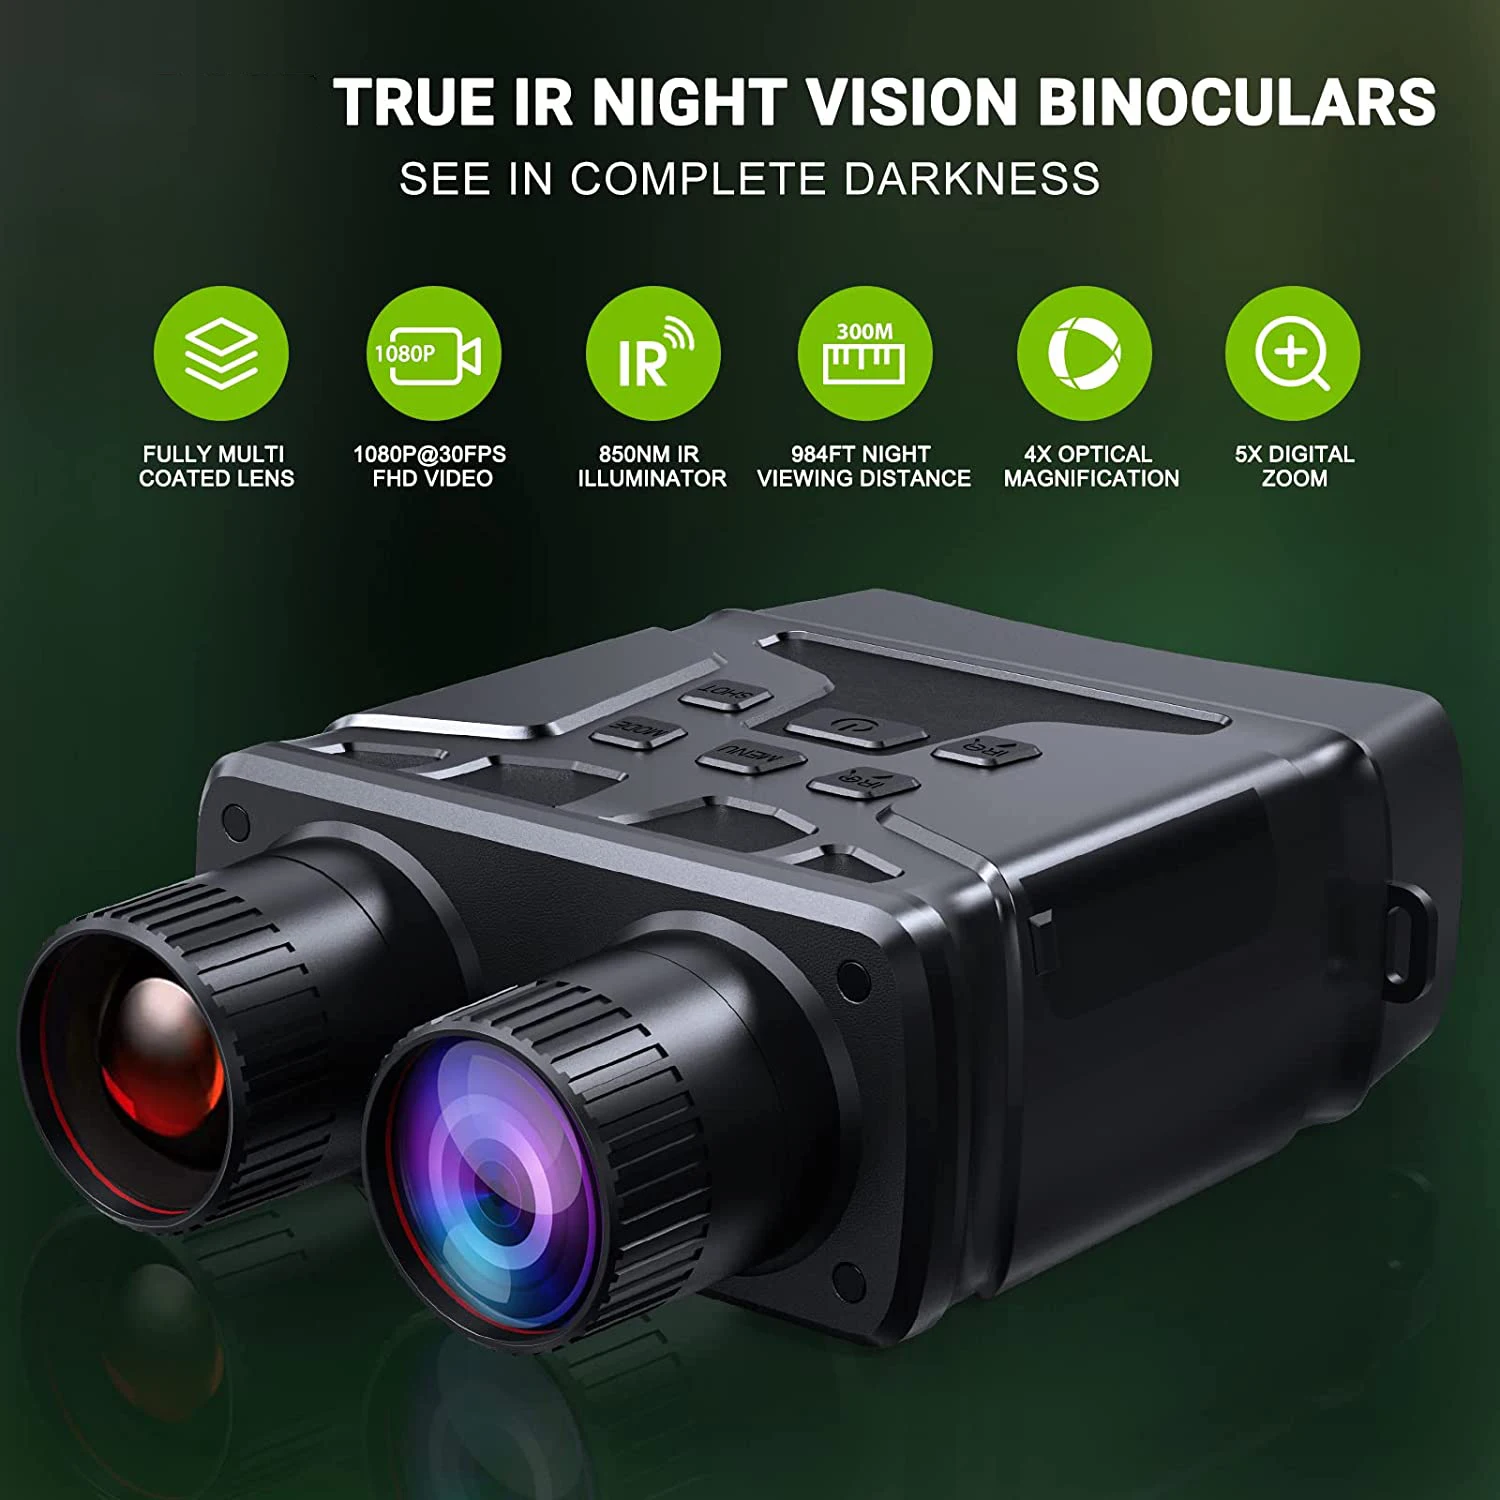 Бинокль R6 1080P HD, прибор ночного видения с возможностью видеосъемки, Инфракрасная камера дневного и ночного видения двойного назначения 300 м